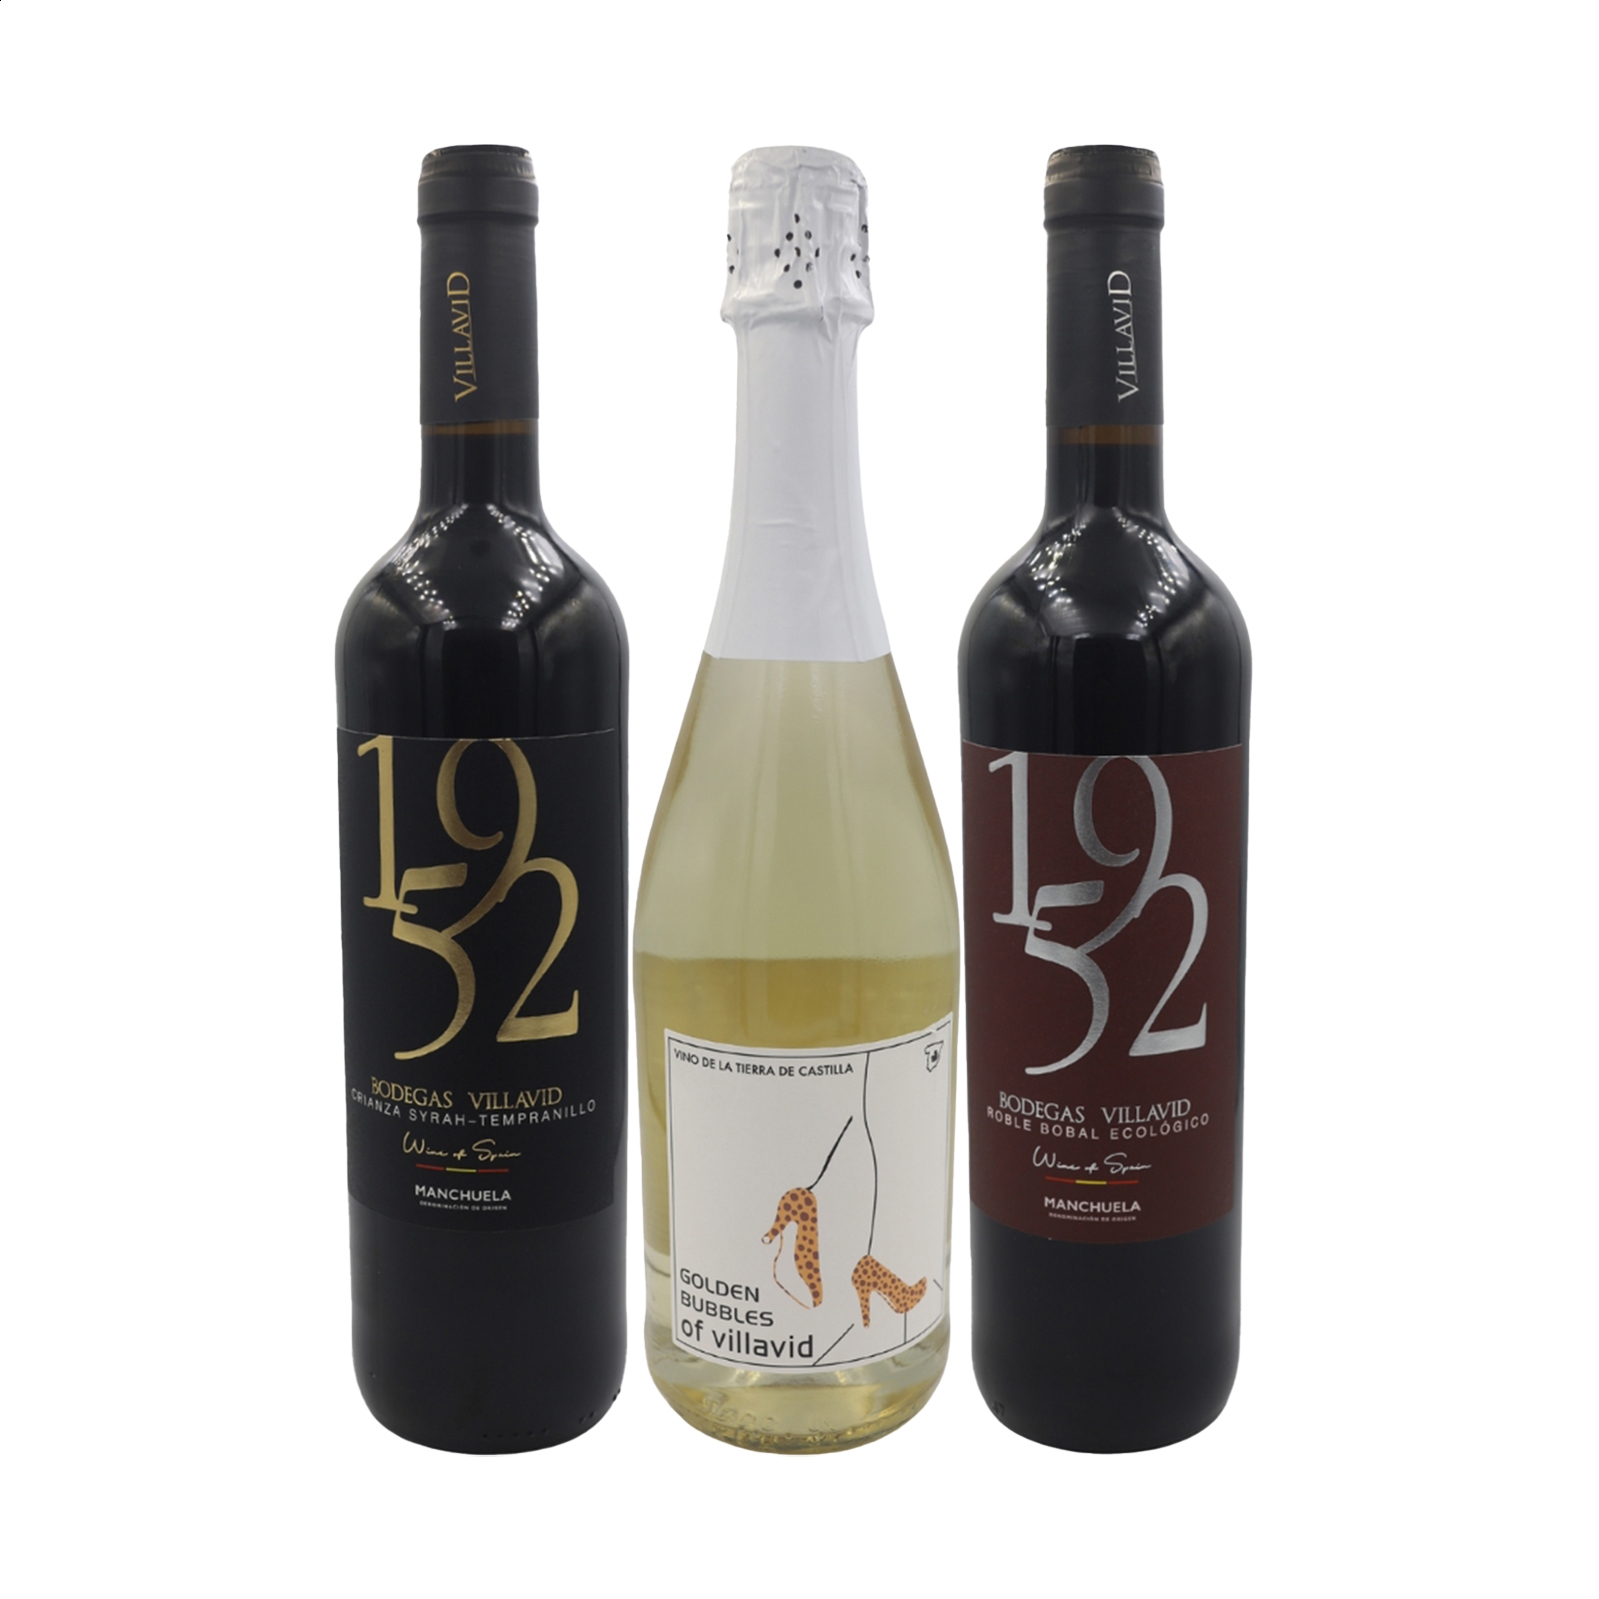 Bodegas Villavid - Lote Especial 1952 y Golden Bubbles, IGP Vino de la Tierra de Castilla 75cl, 3uds